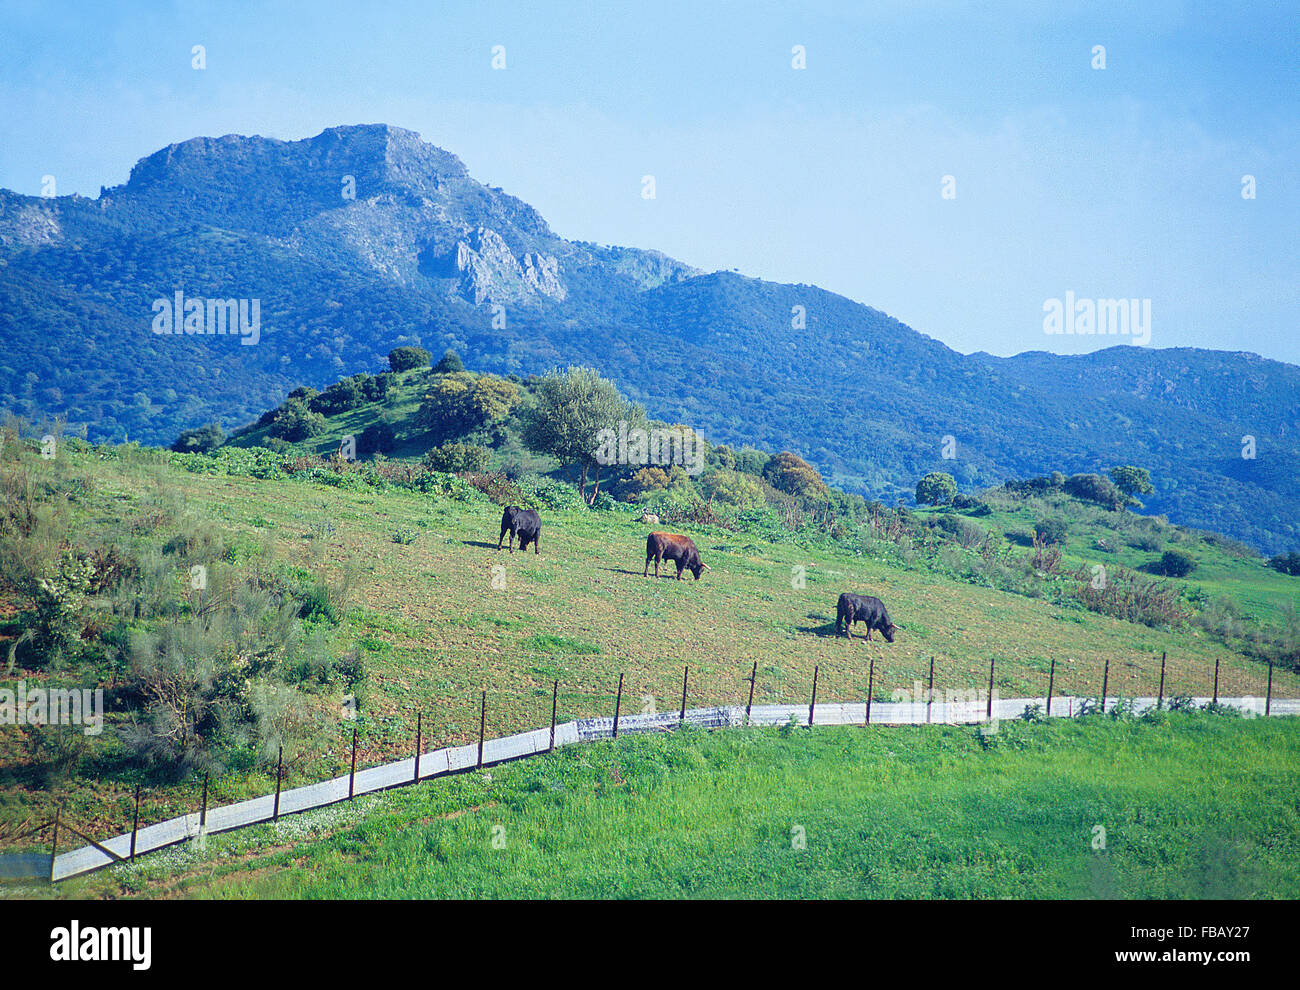 Bulls paissant dans une prairie. La Sierra de Grazalema, province de Cadix, Andalousie, espagne. Banque D'Images